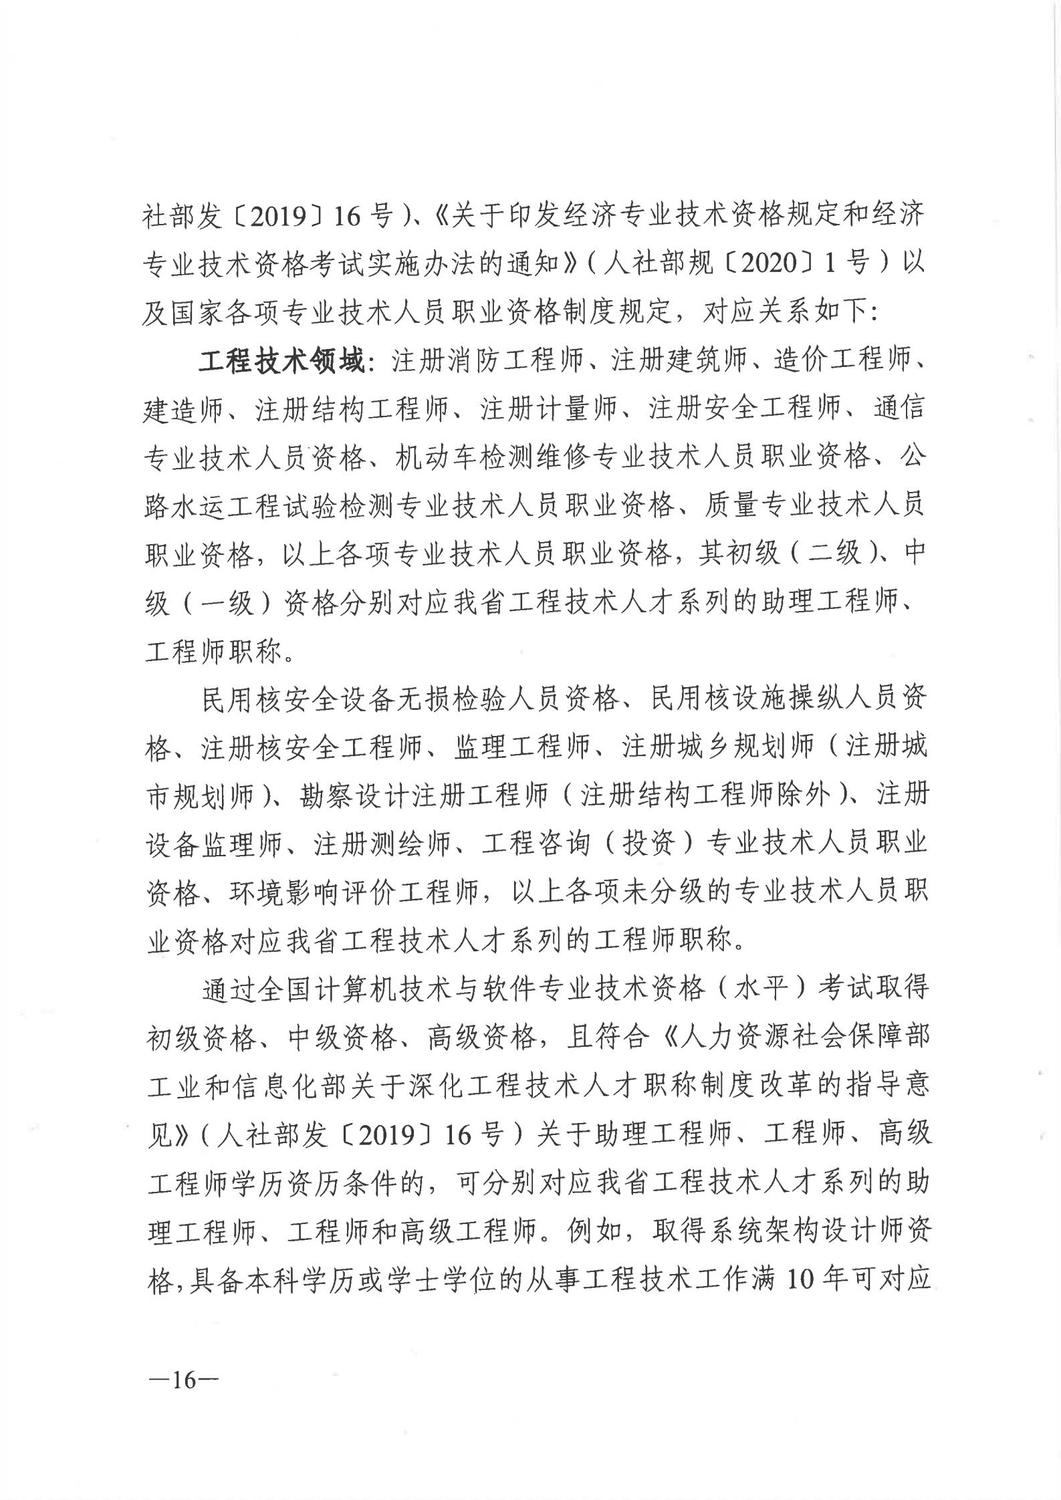 广东省人力资源和社会保障厅《关于做好2021年度职称评审工作的通知》_15.jpg